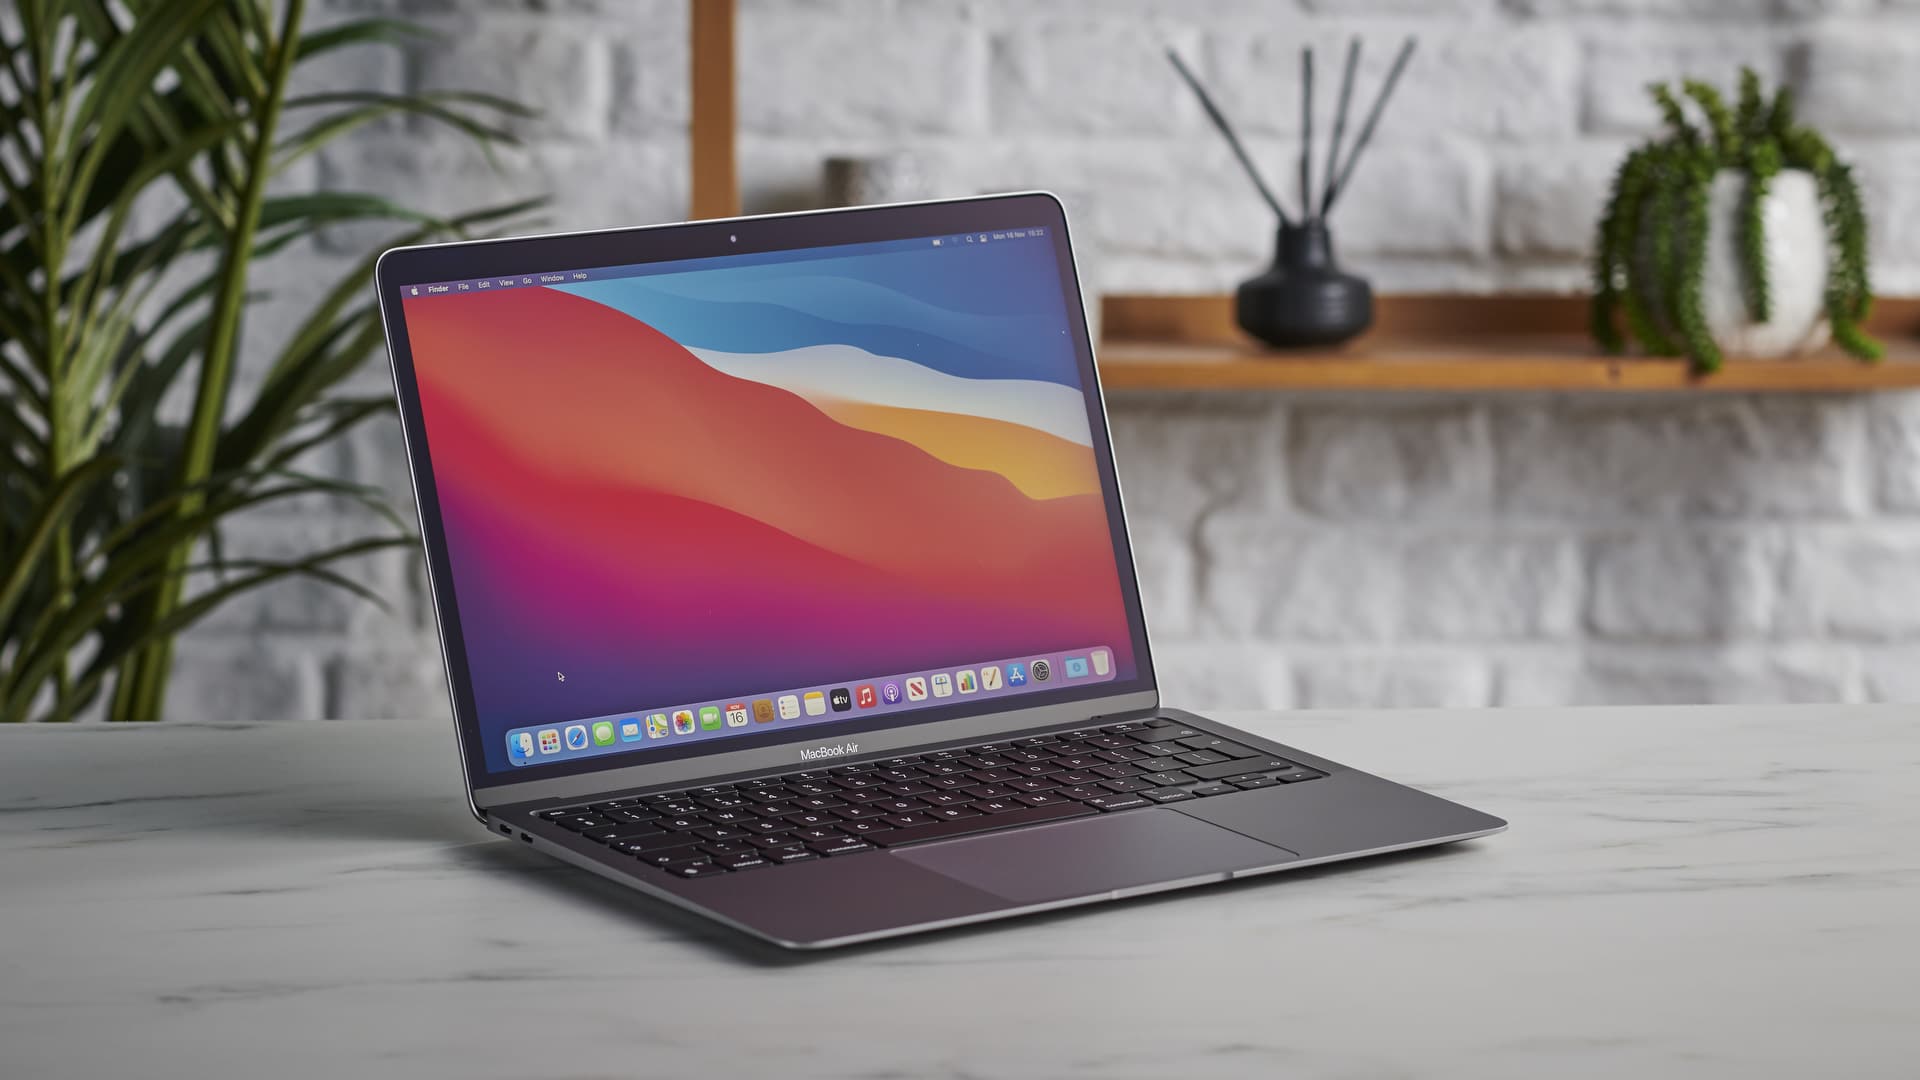 MacBook Air chạy Apple Silicon thế hệ mới mới sẽ ra mắt vào Q3/2022